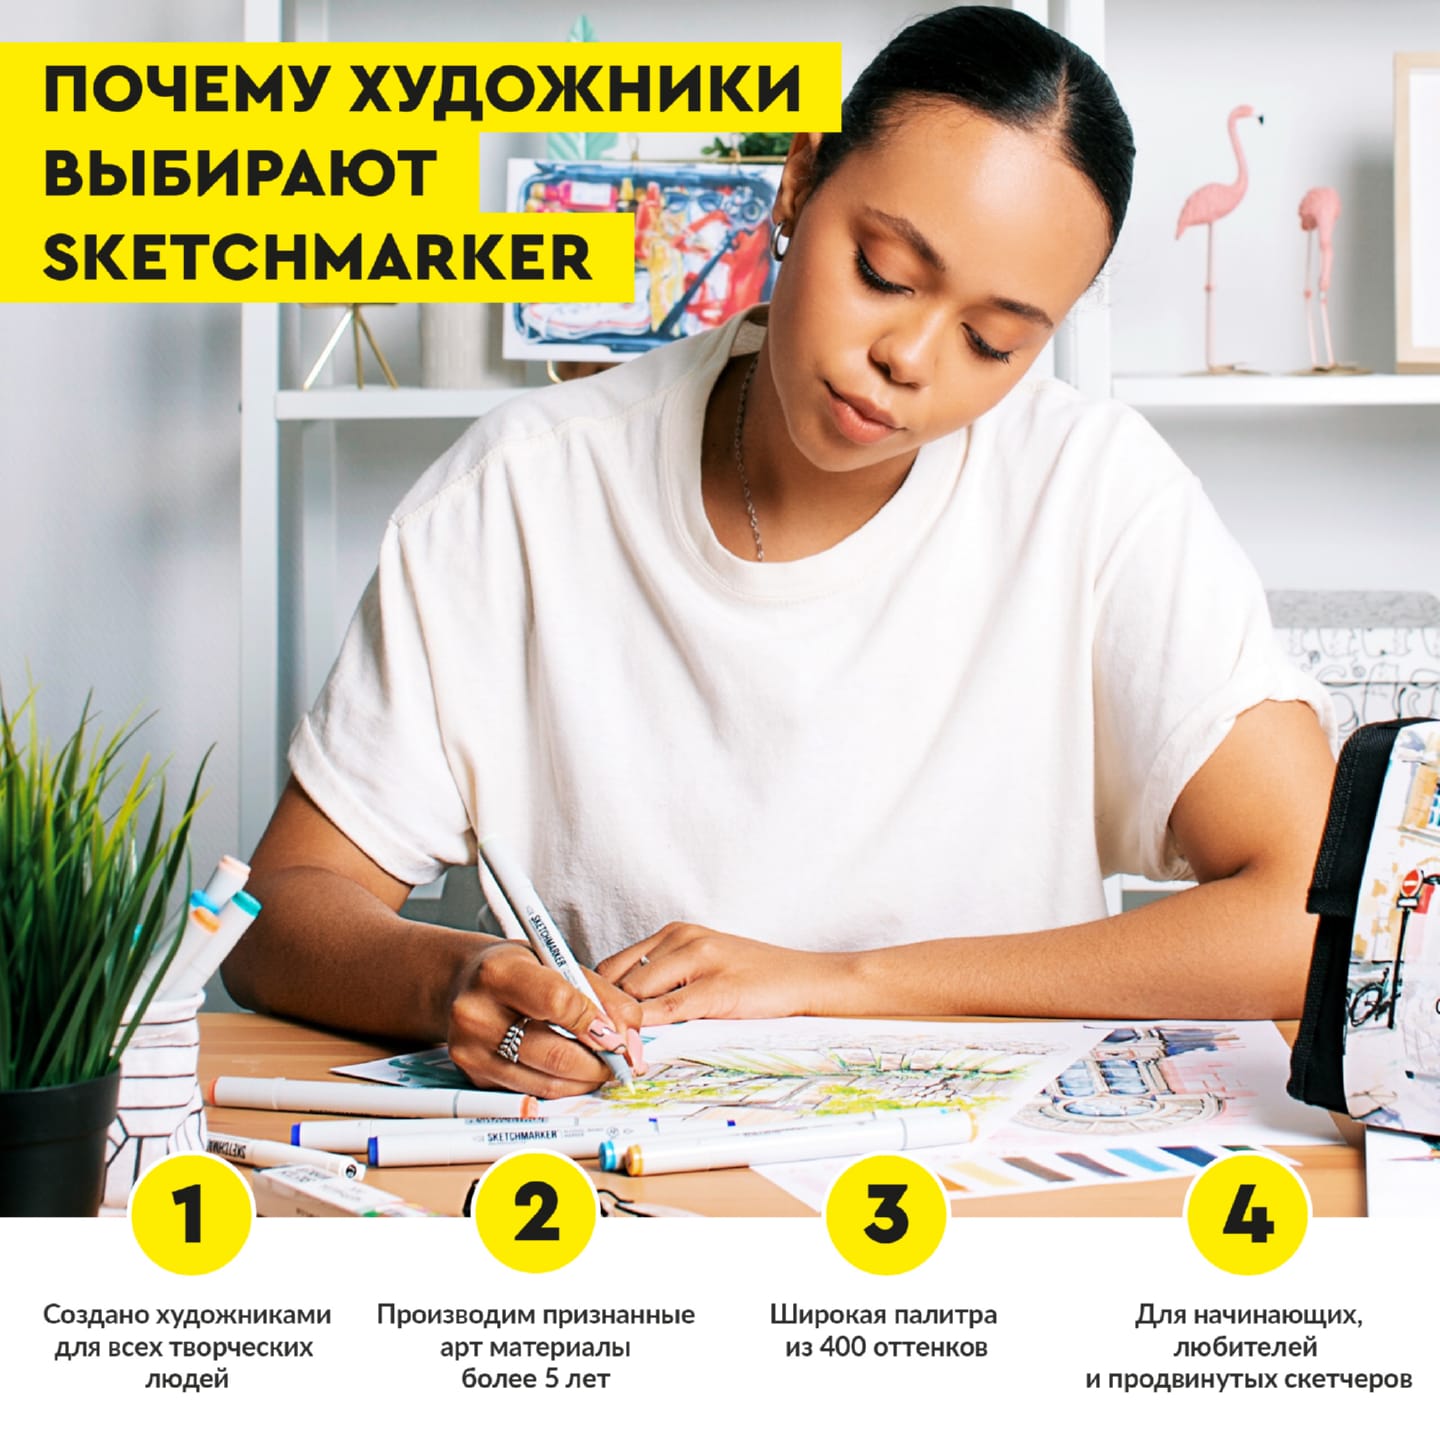 Набор маркеров SKETCHMARKER Product 1 36шт промышленный дизайн + сумка органайзер